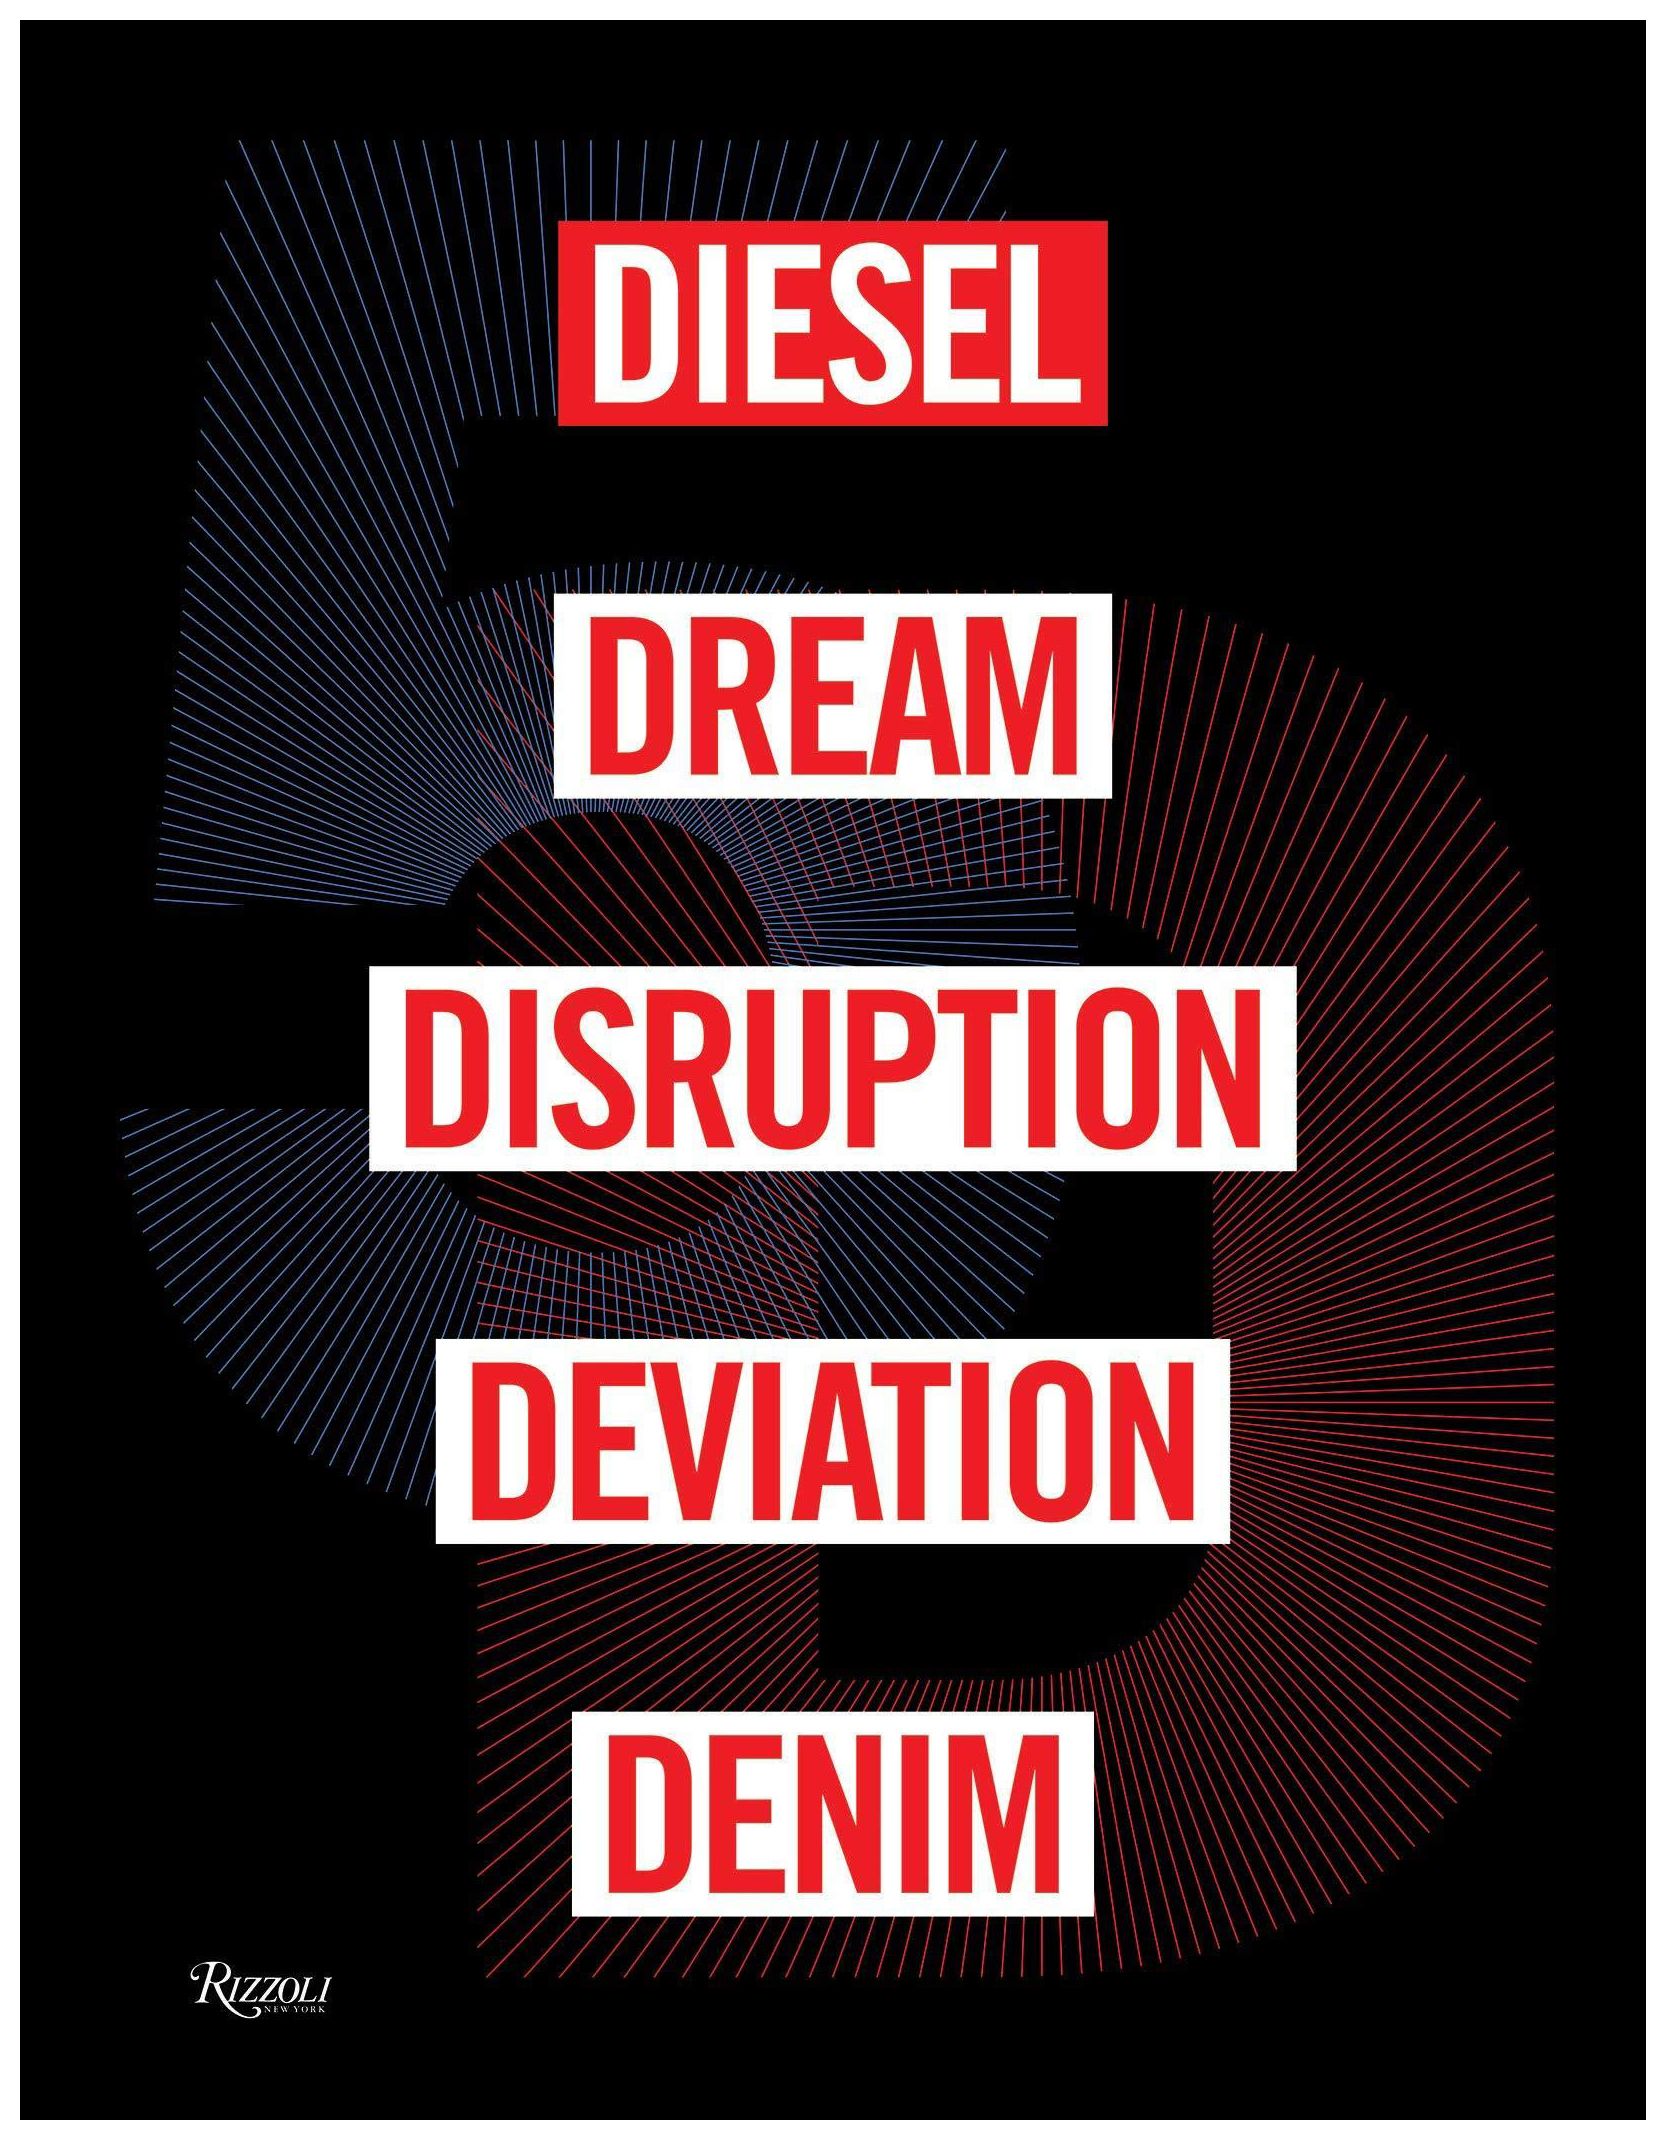 Diesel, Dream, Disruption, Deviation, Denim